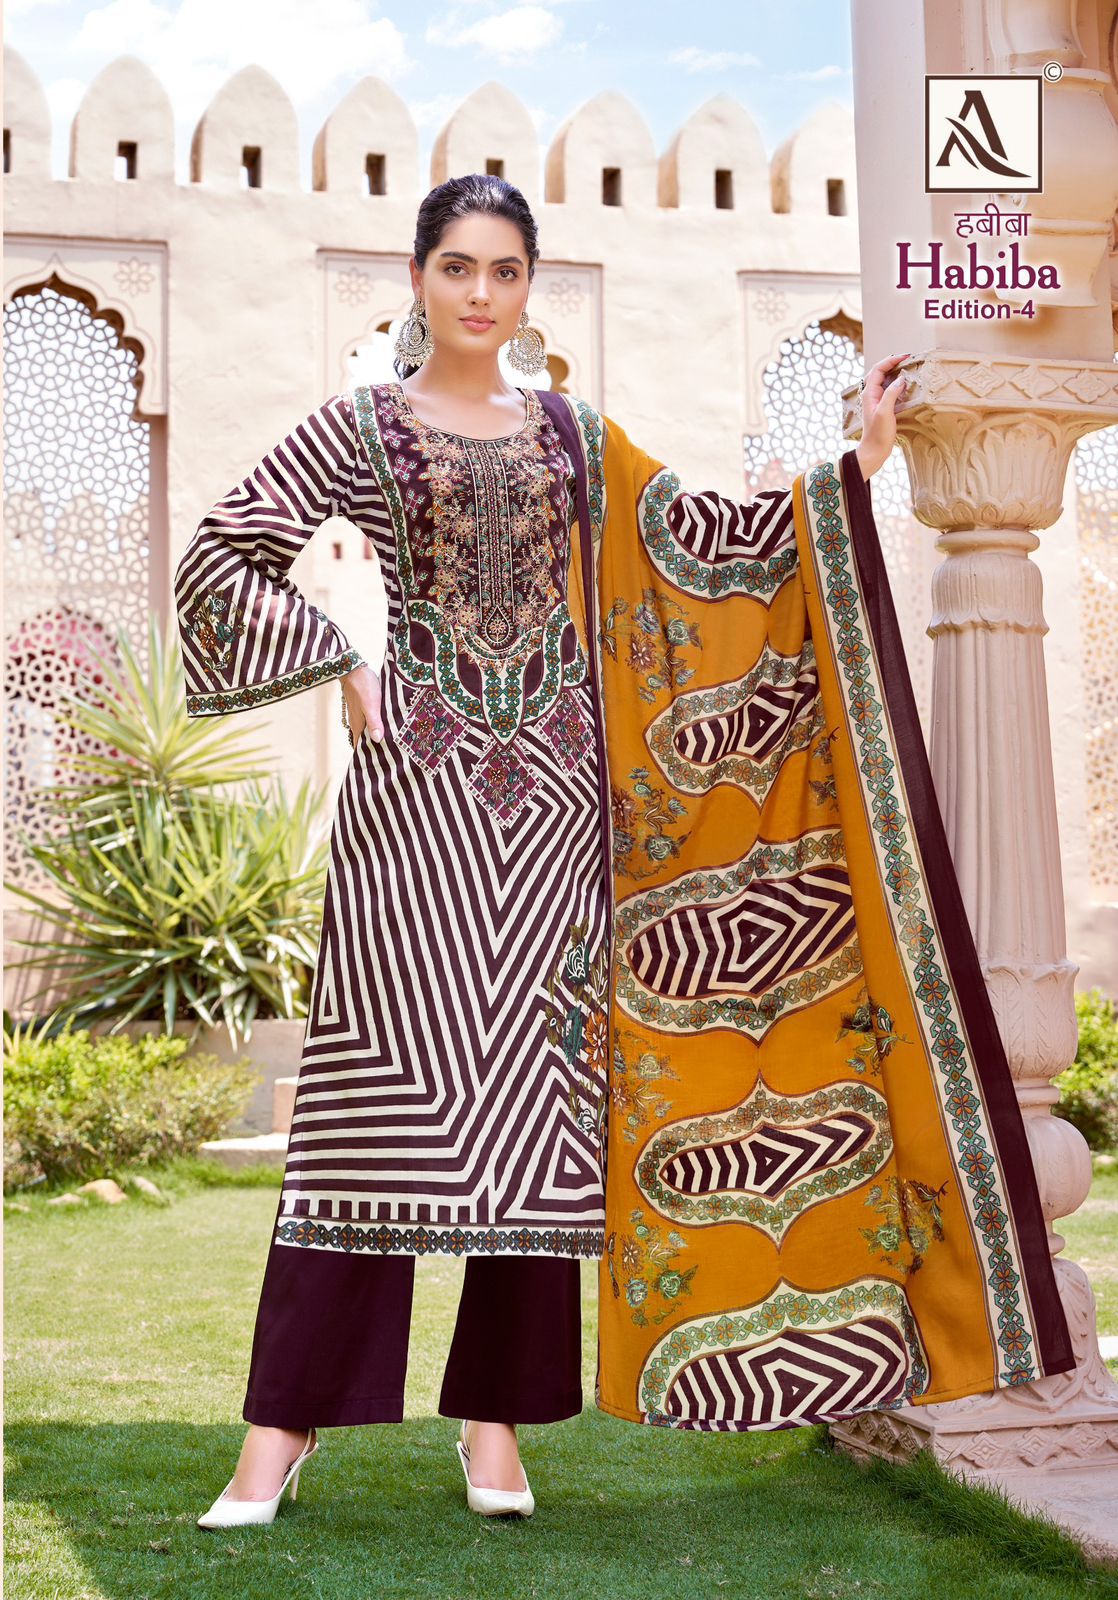 Habiba Edition 4 Alok Pure Cotton Karachi Salwar Suits